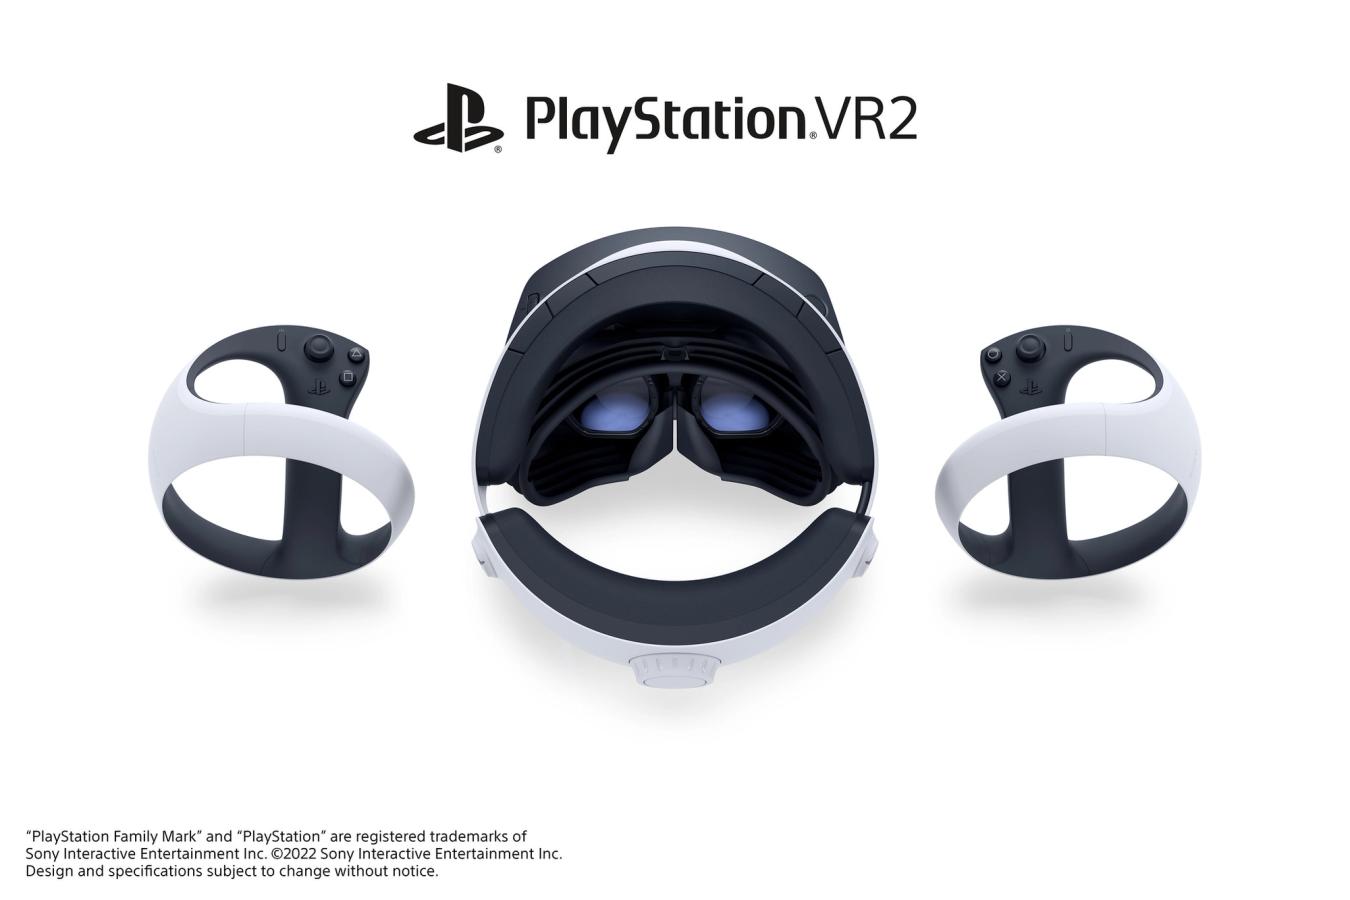 PlayStation VR2 headset design